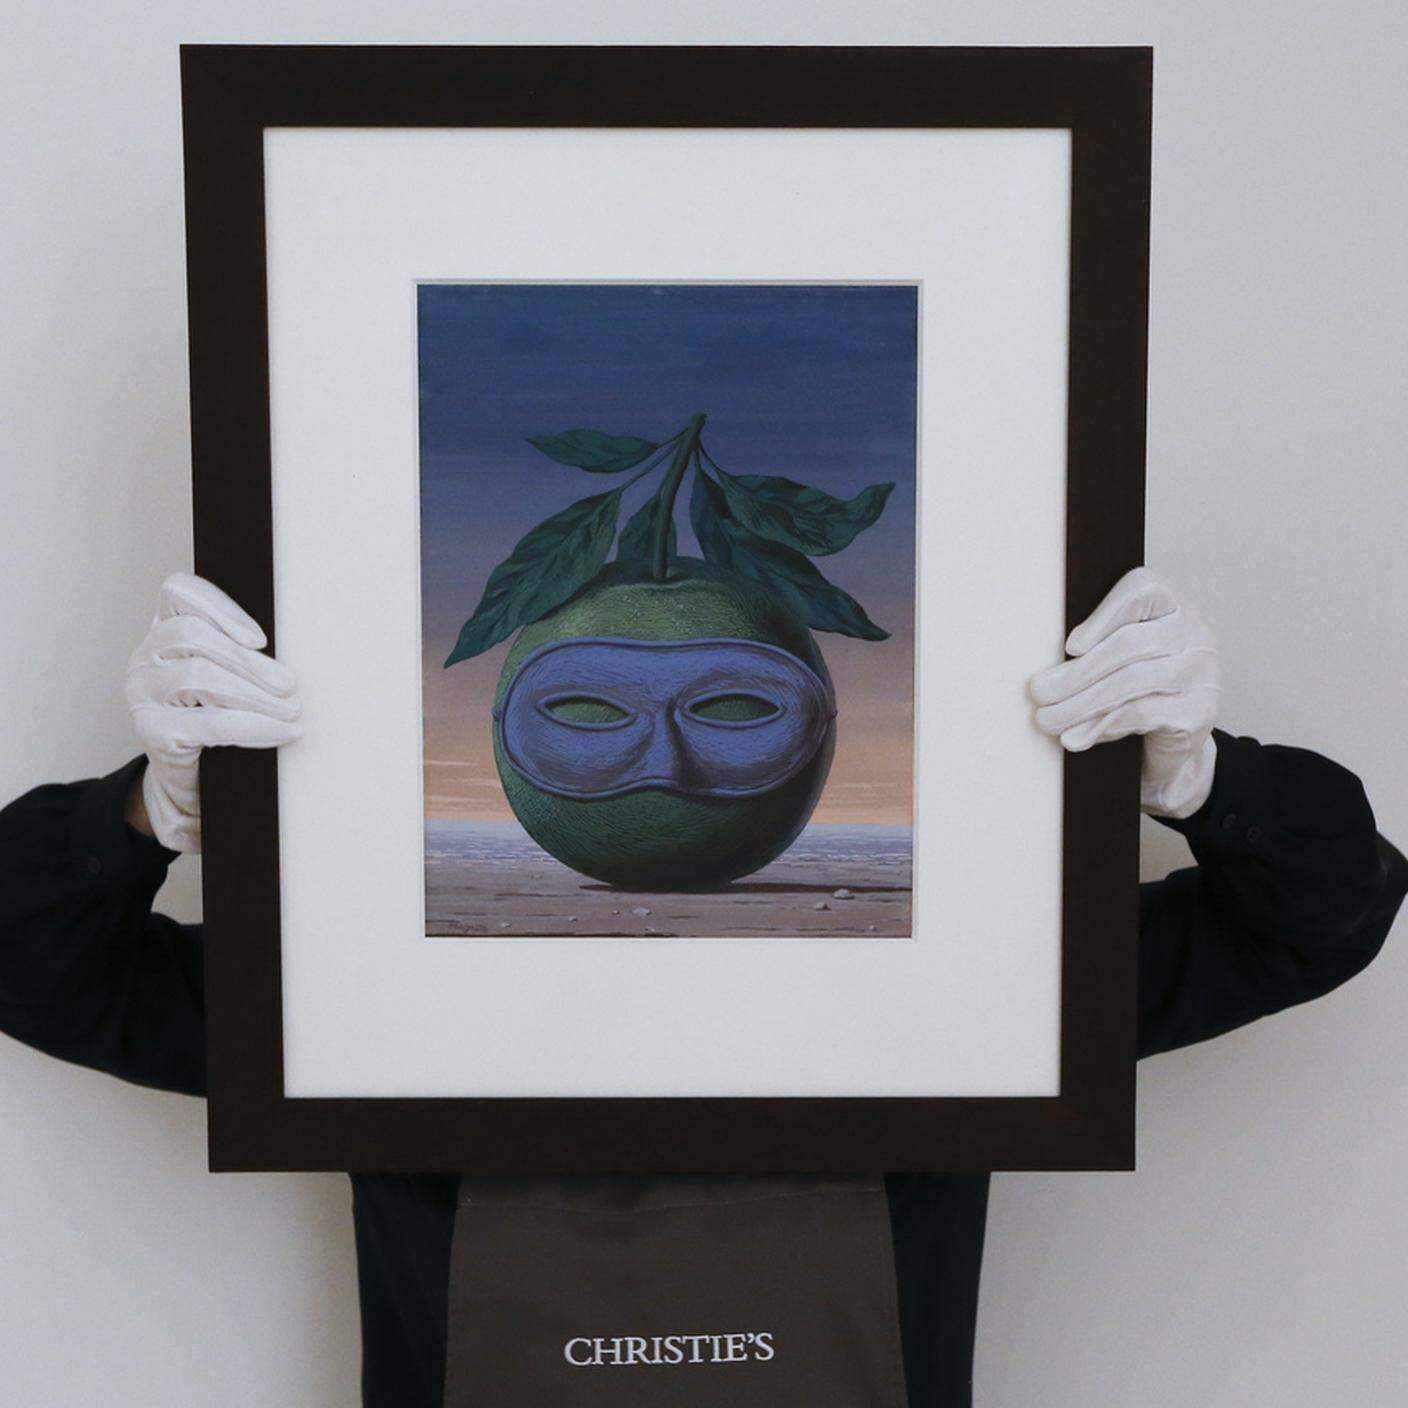 Rene Magritte, "Souvenir de voyage"